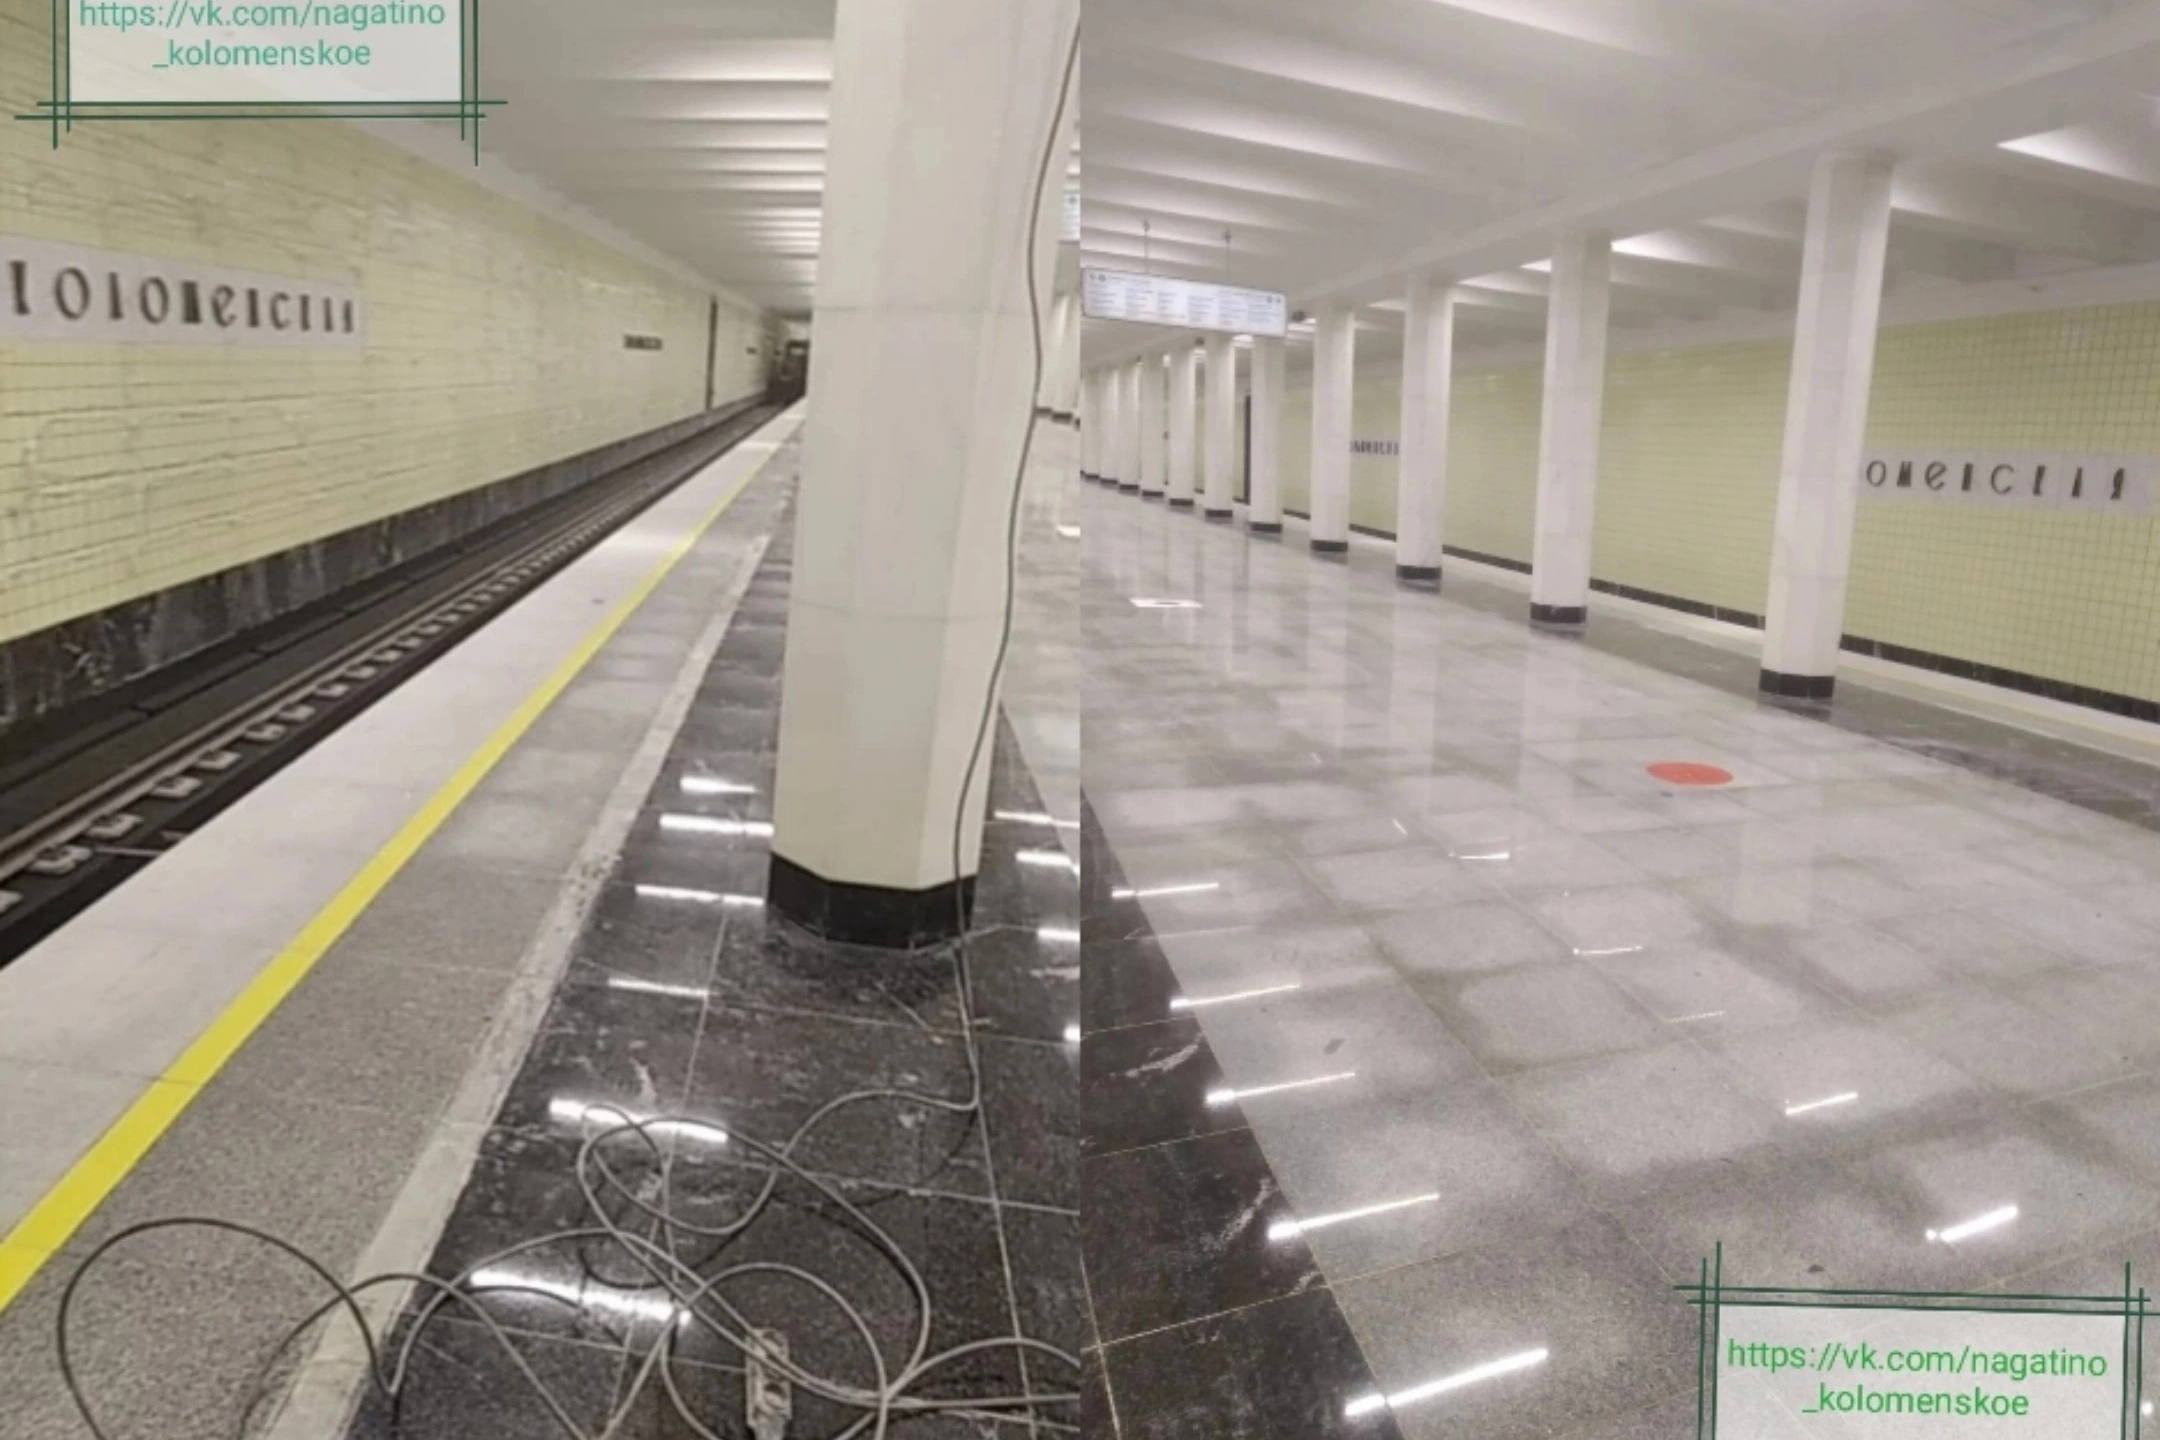 Закрытие станций зеленой ветки метро: когда откроется Коломенская, как  выглядит, реконструкция, фото ремонта Замоскворецкой линии - 7 мая 2023 -  msk1.ru